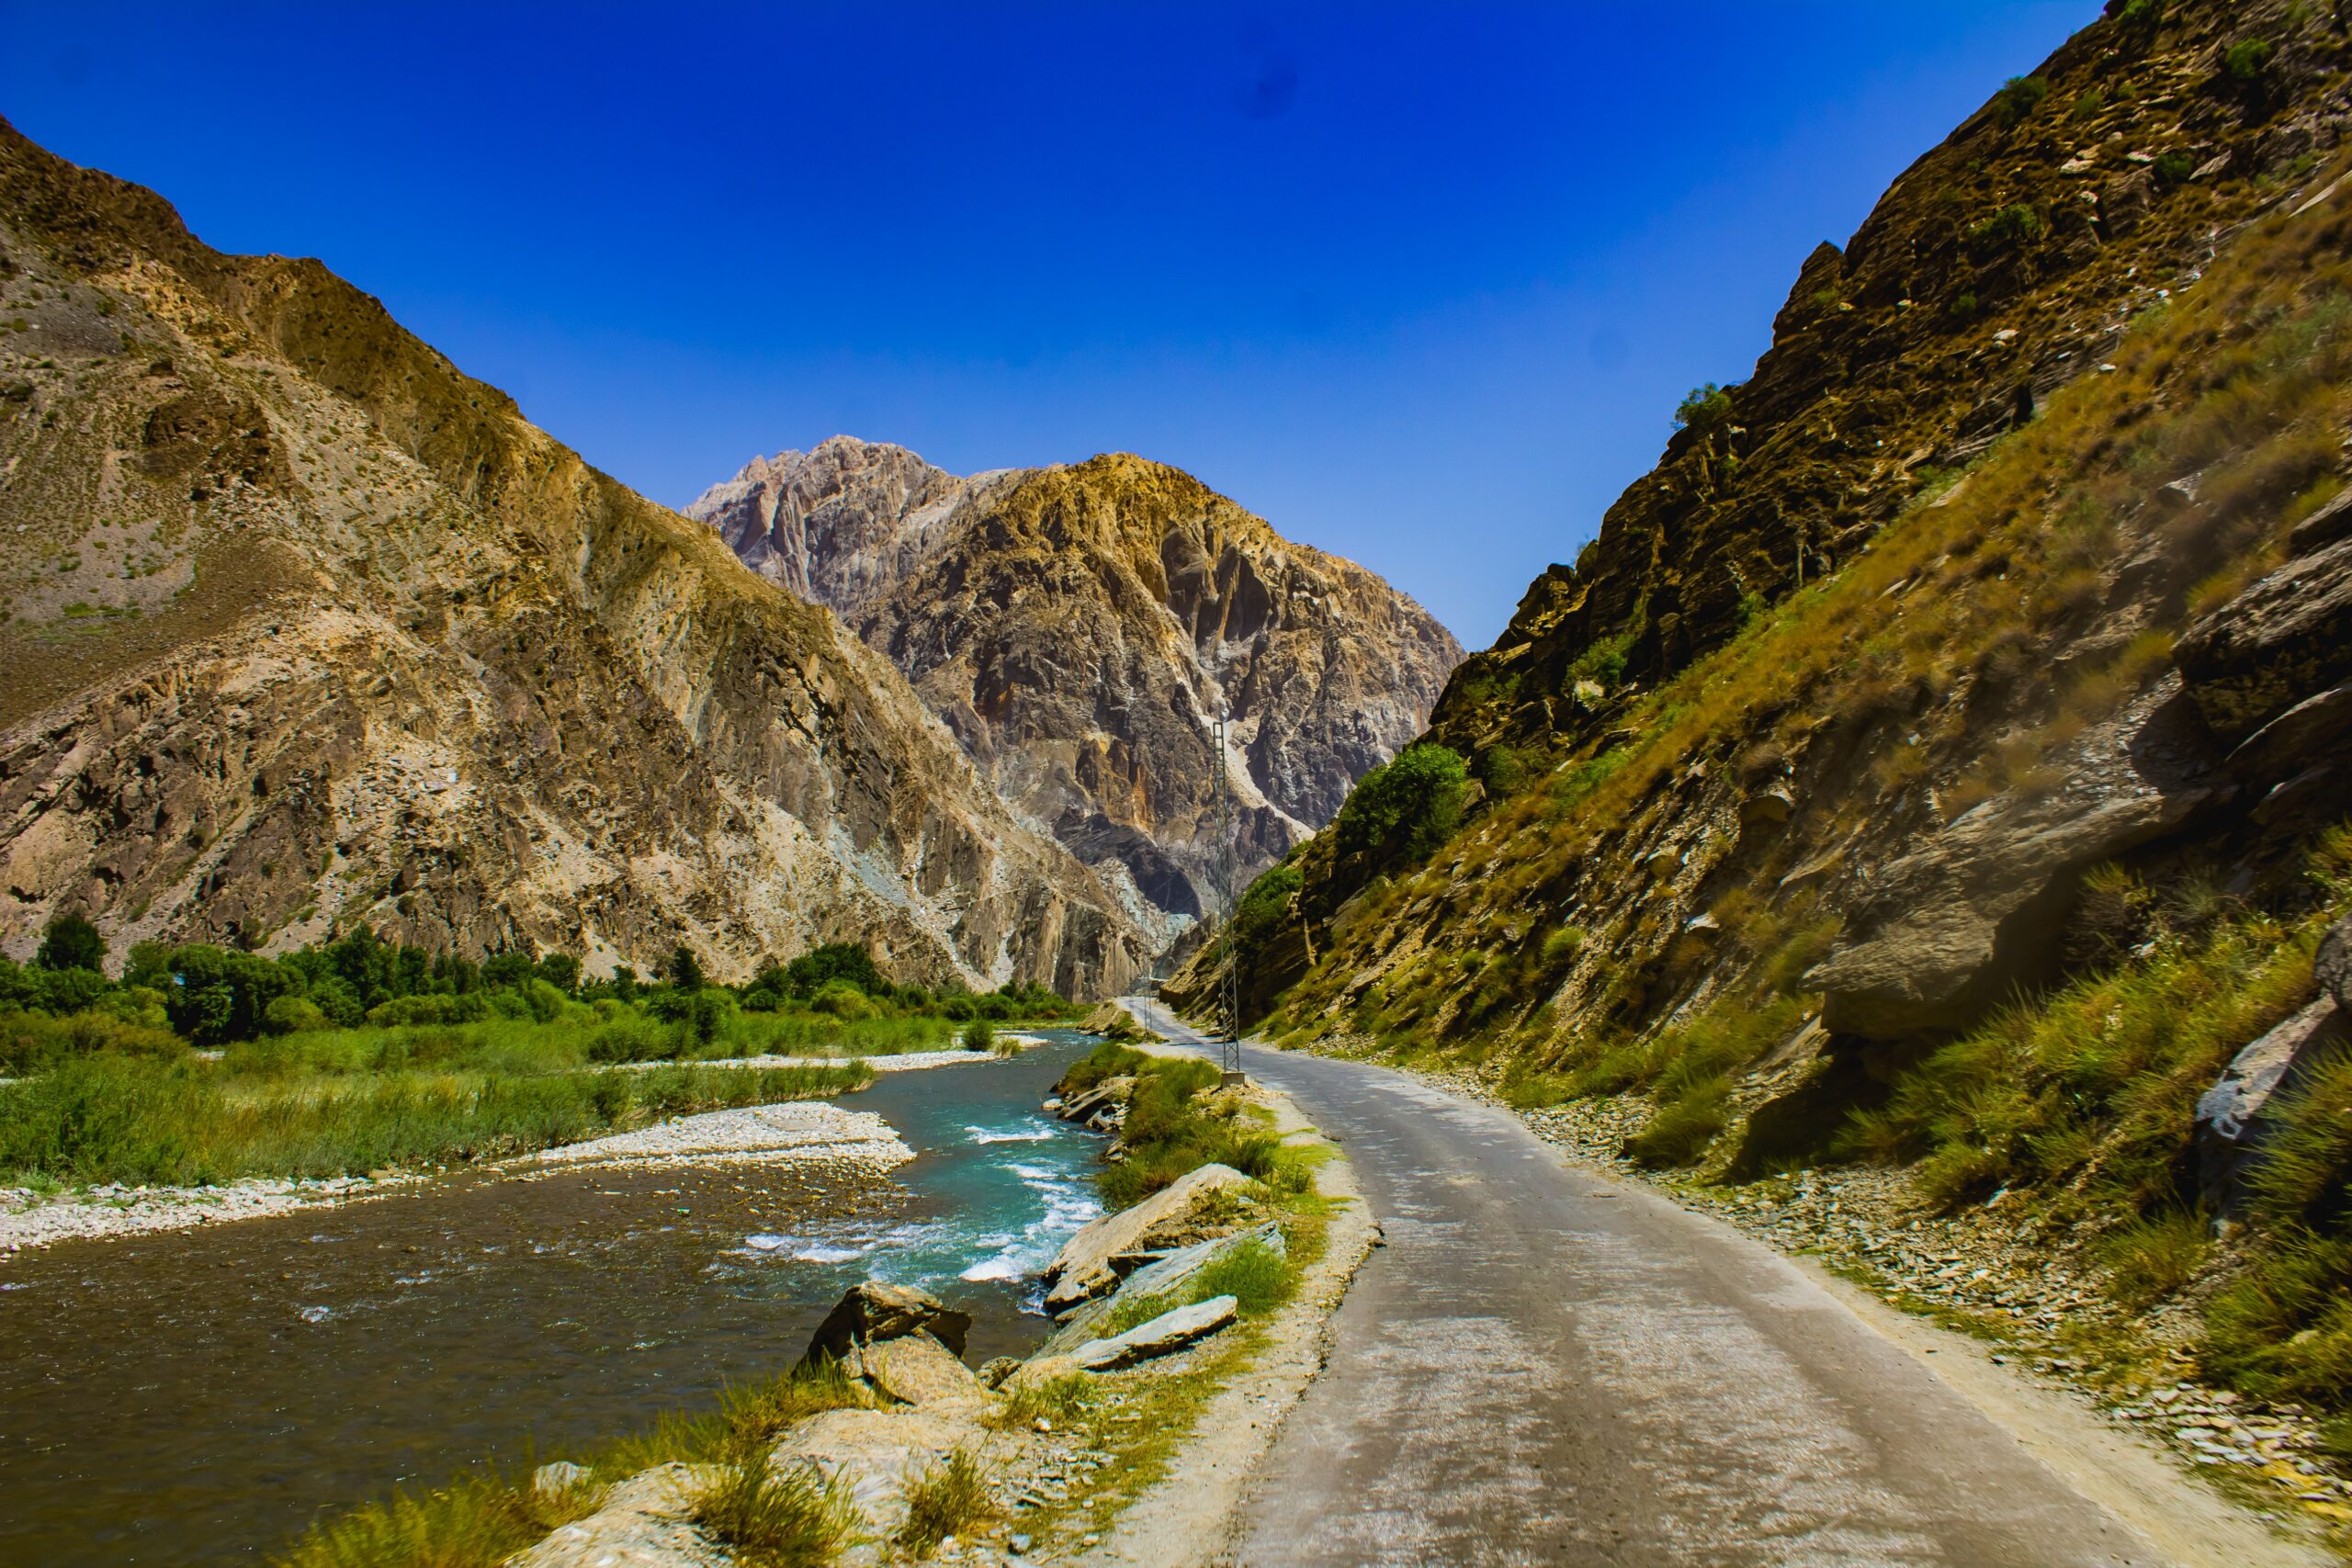 Vista da estrada em Garam Chashma, Chitrāl, Paquistão  em meio a montanhas - Representa seguro viagem Paquistão.